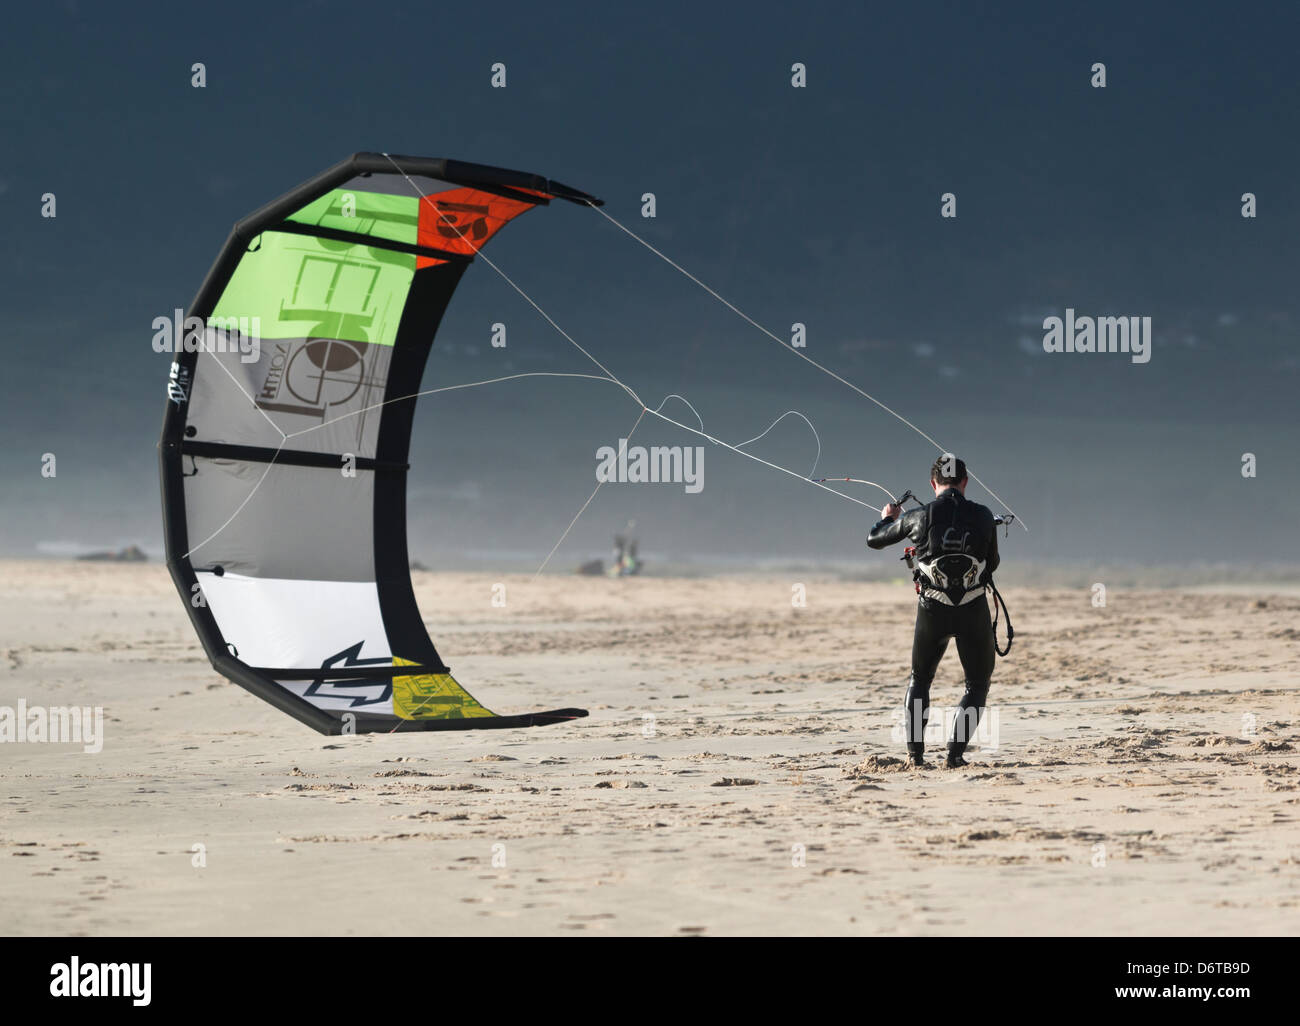 Person launching a kite. Tarifa, Costa de la Luz, Cadiz, Andalusia, Spain, Europe. Stock Photo